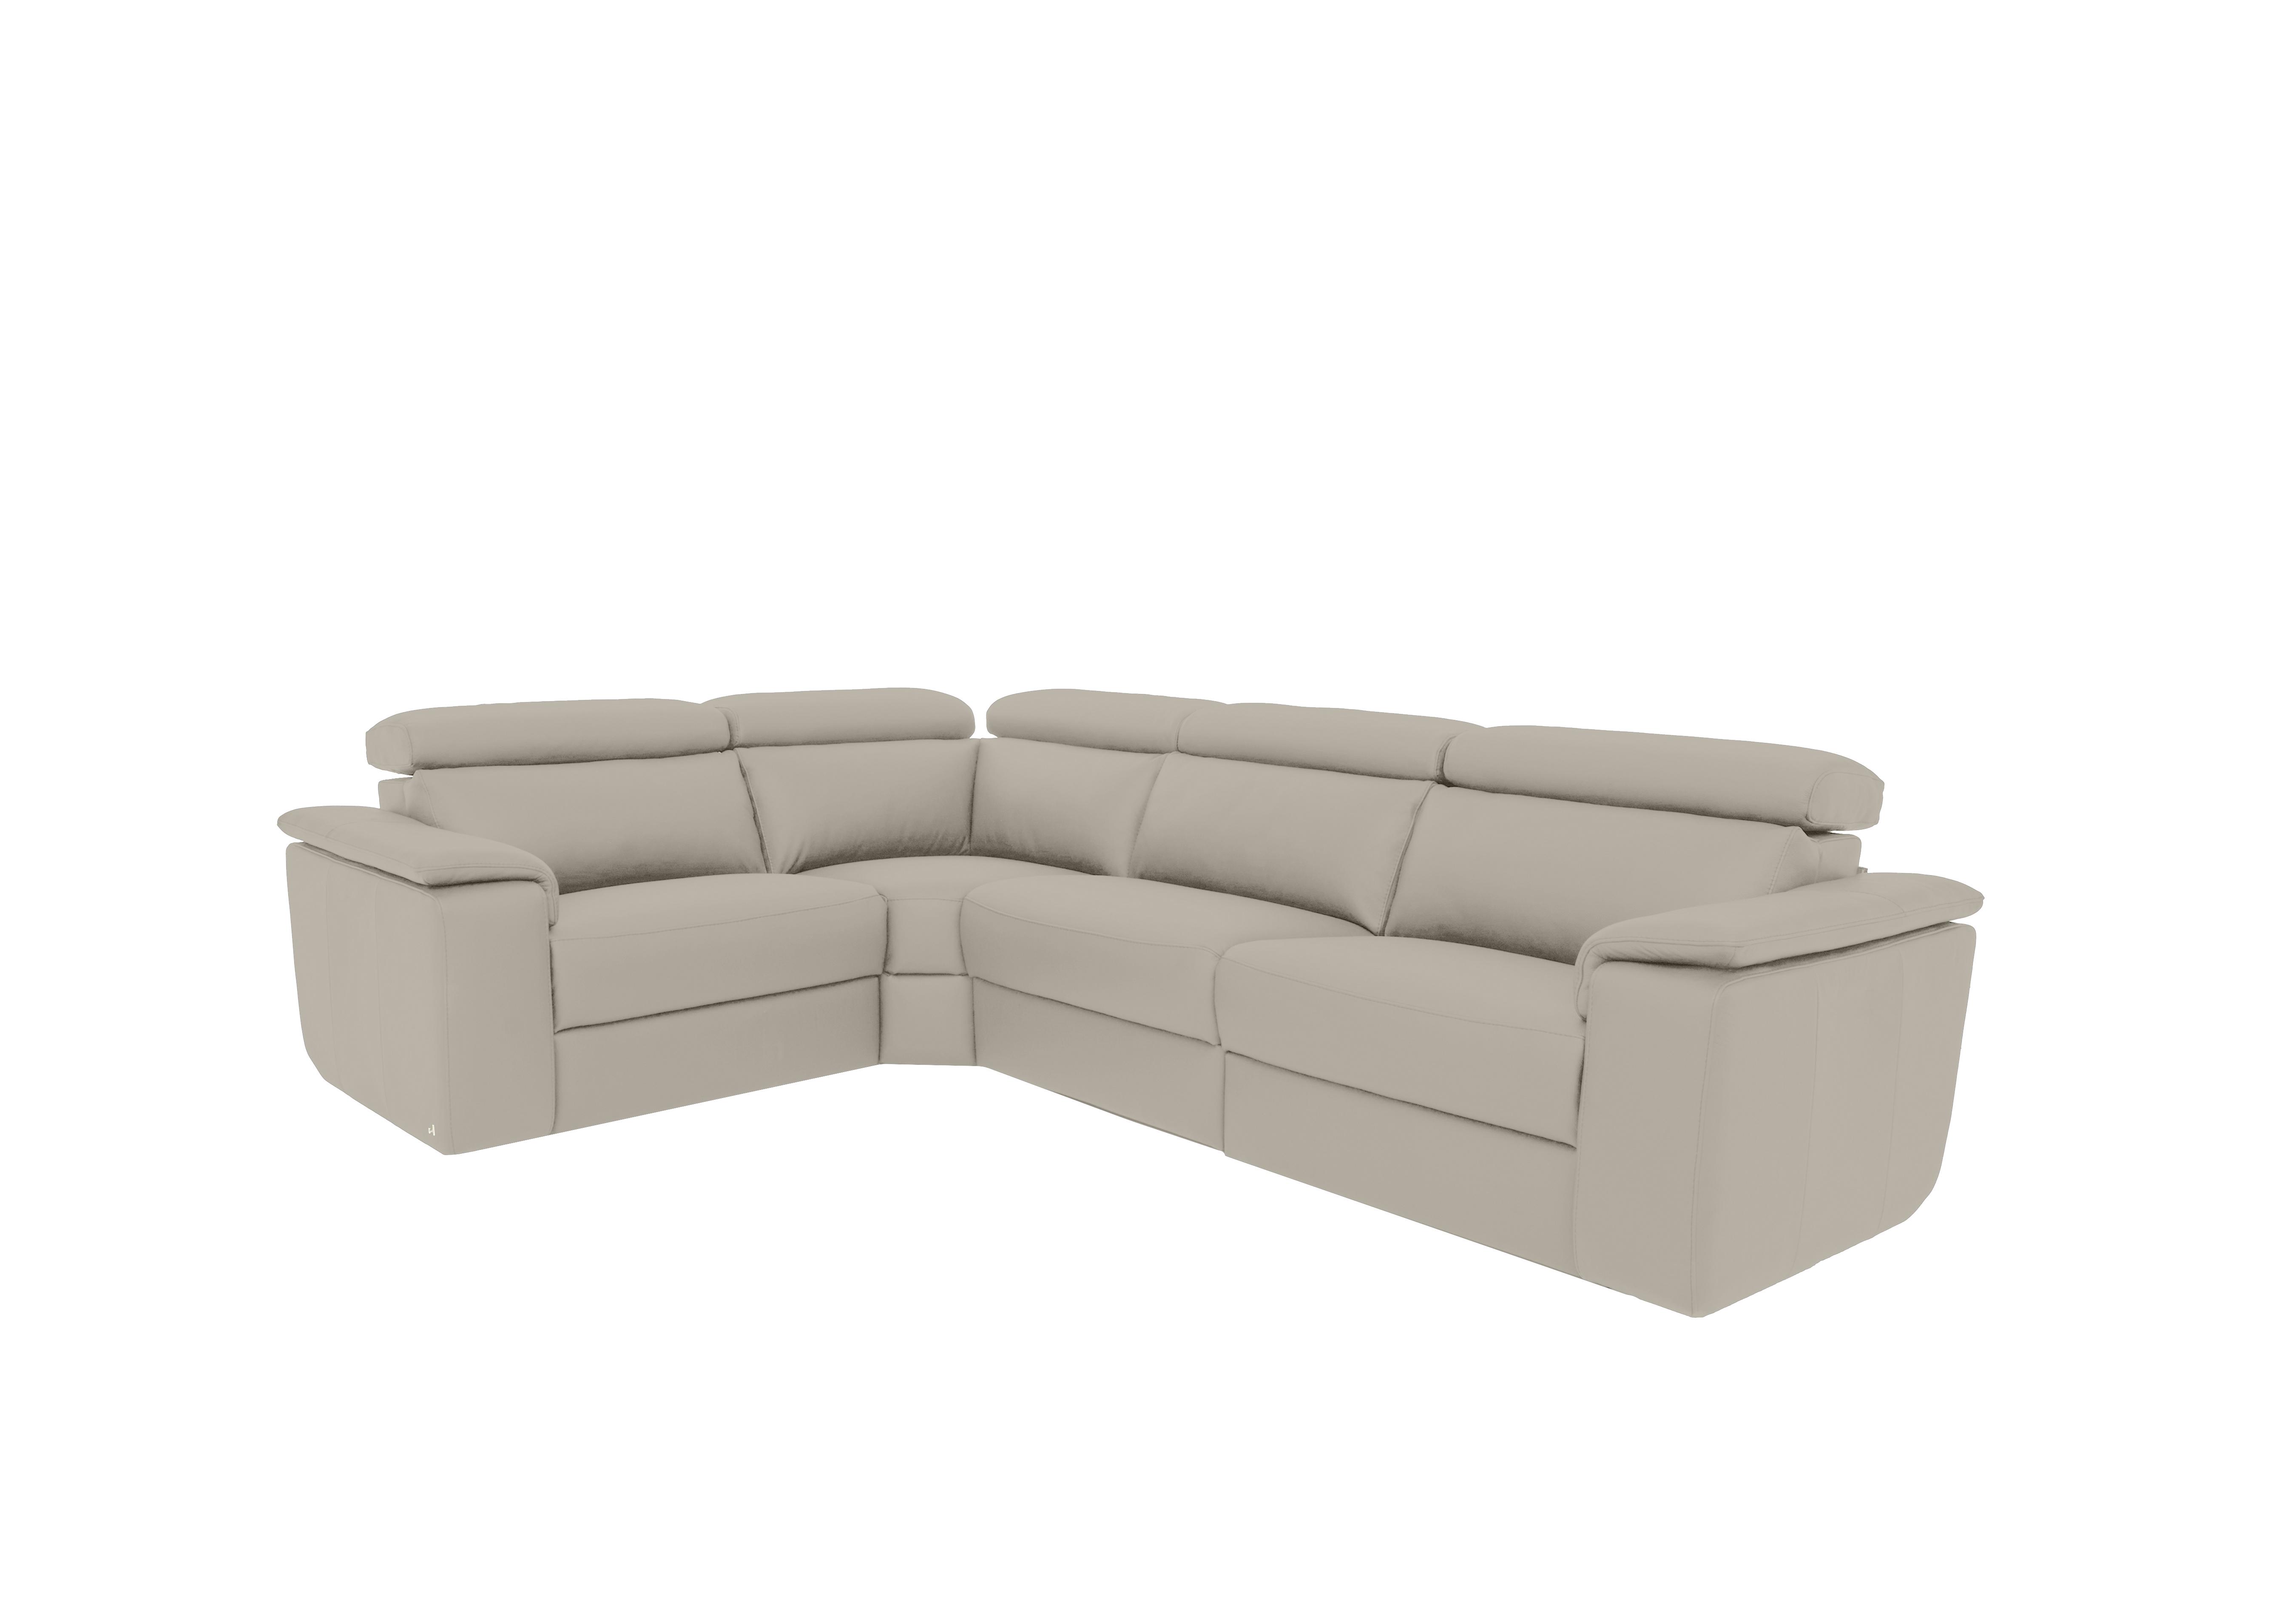 Davide Small Leather Corner Sofa in 328 Torello Tortora on Furniture Village